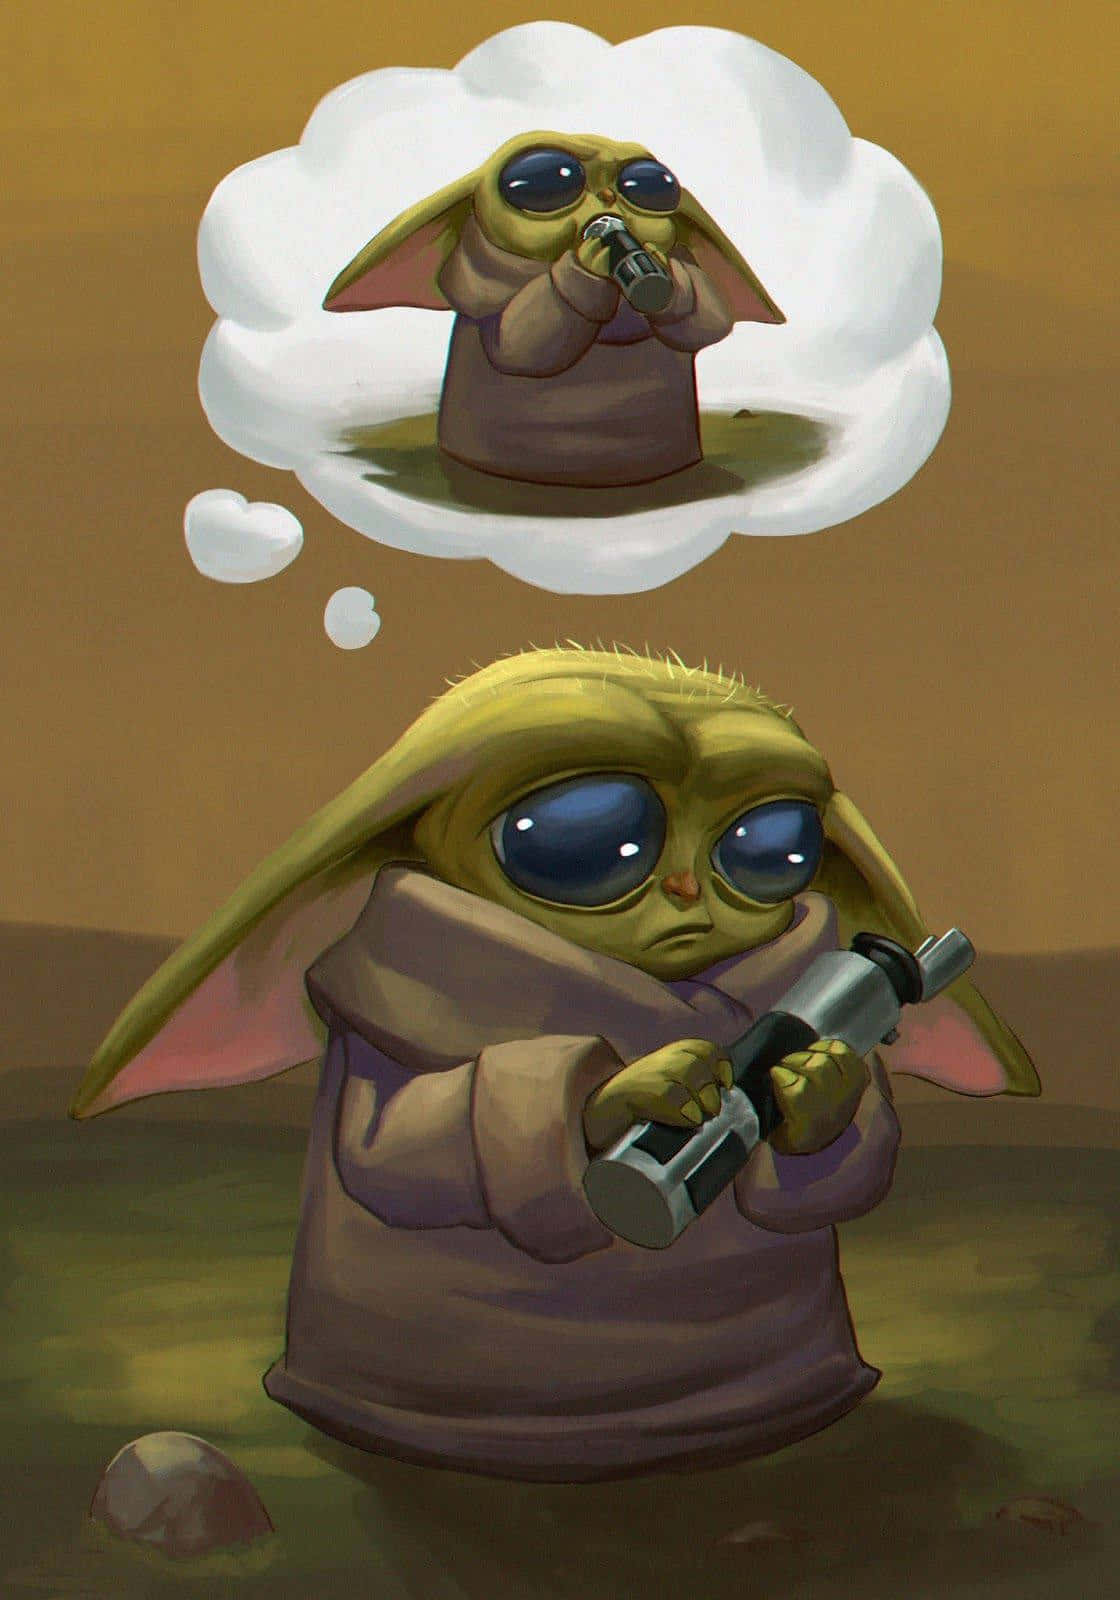 Den lille Yoda holder et gevær og tænker. Wallpaper